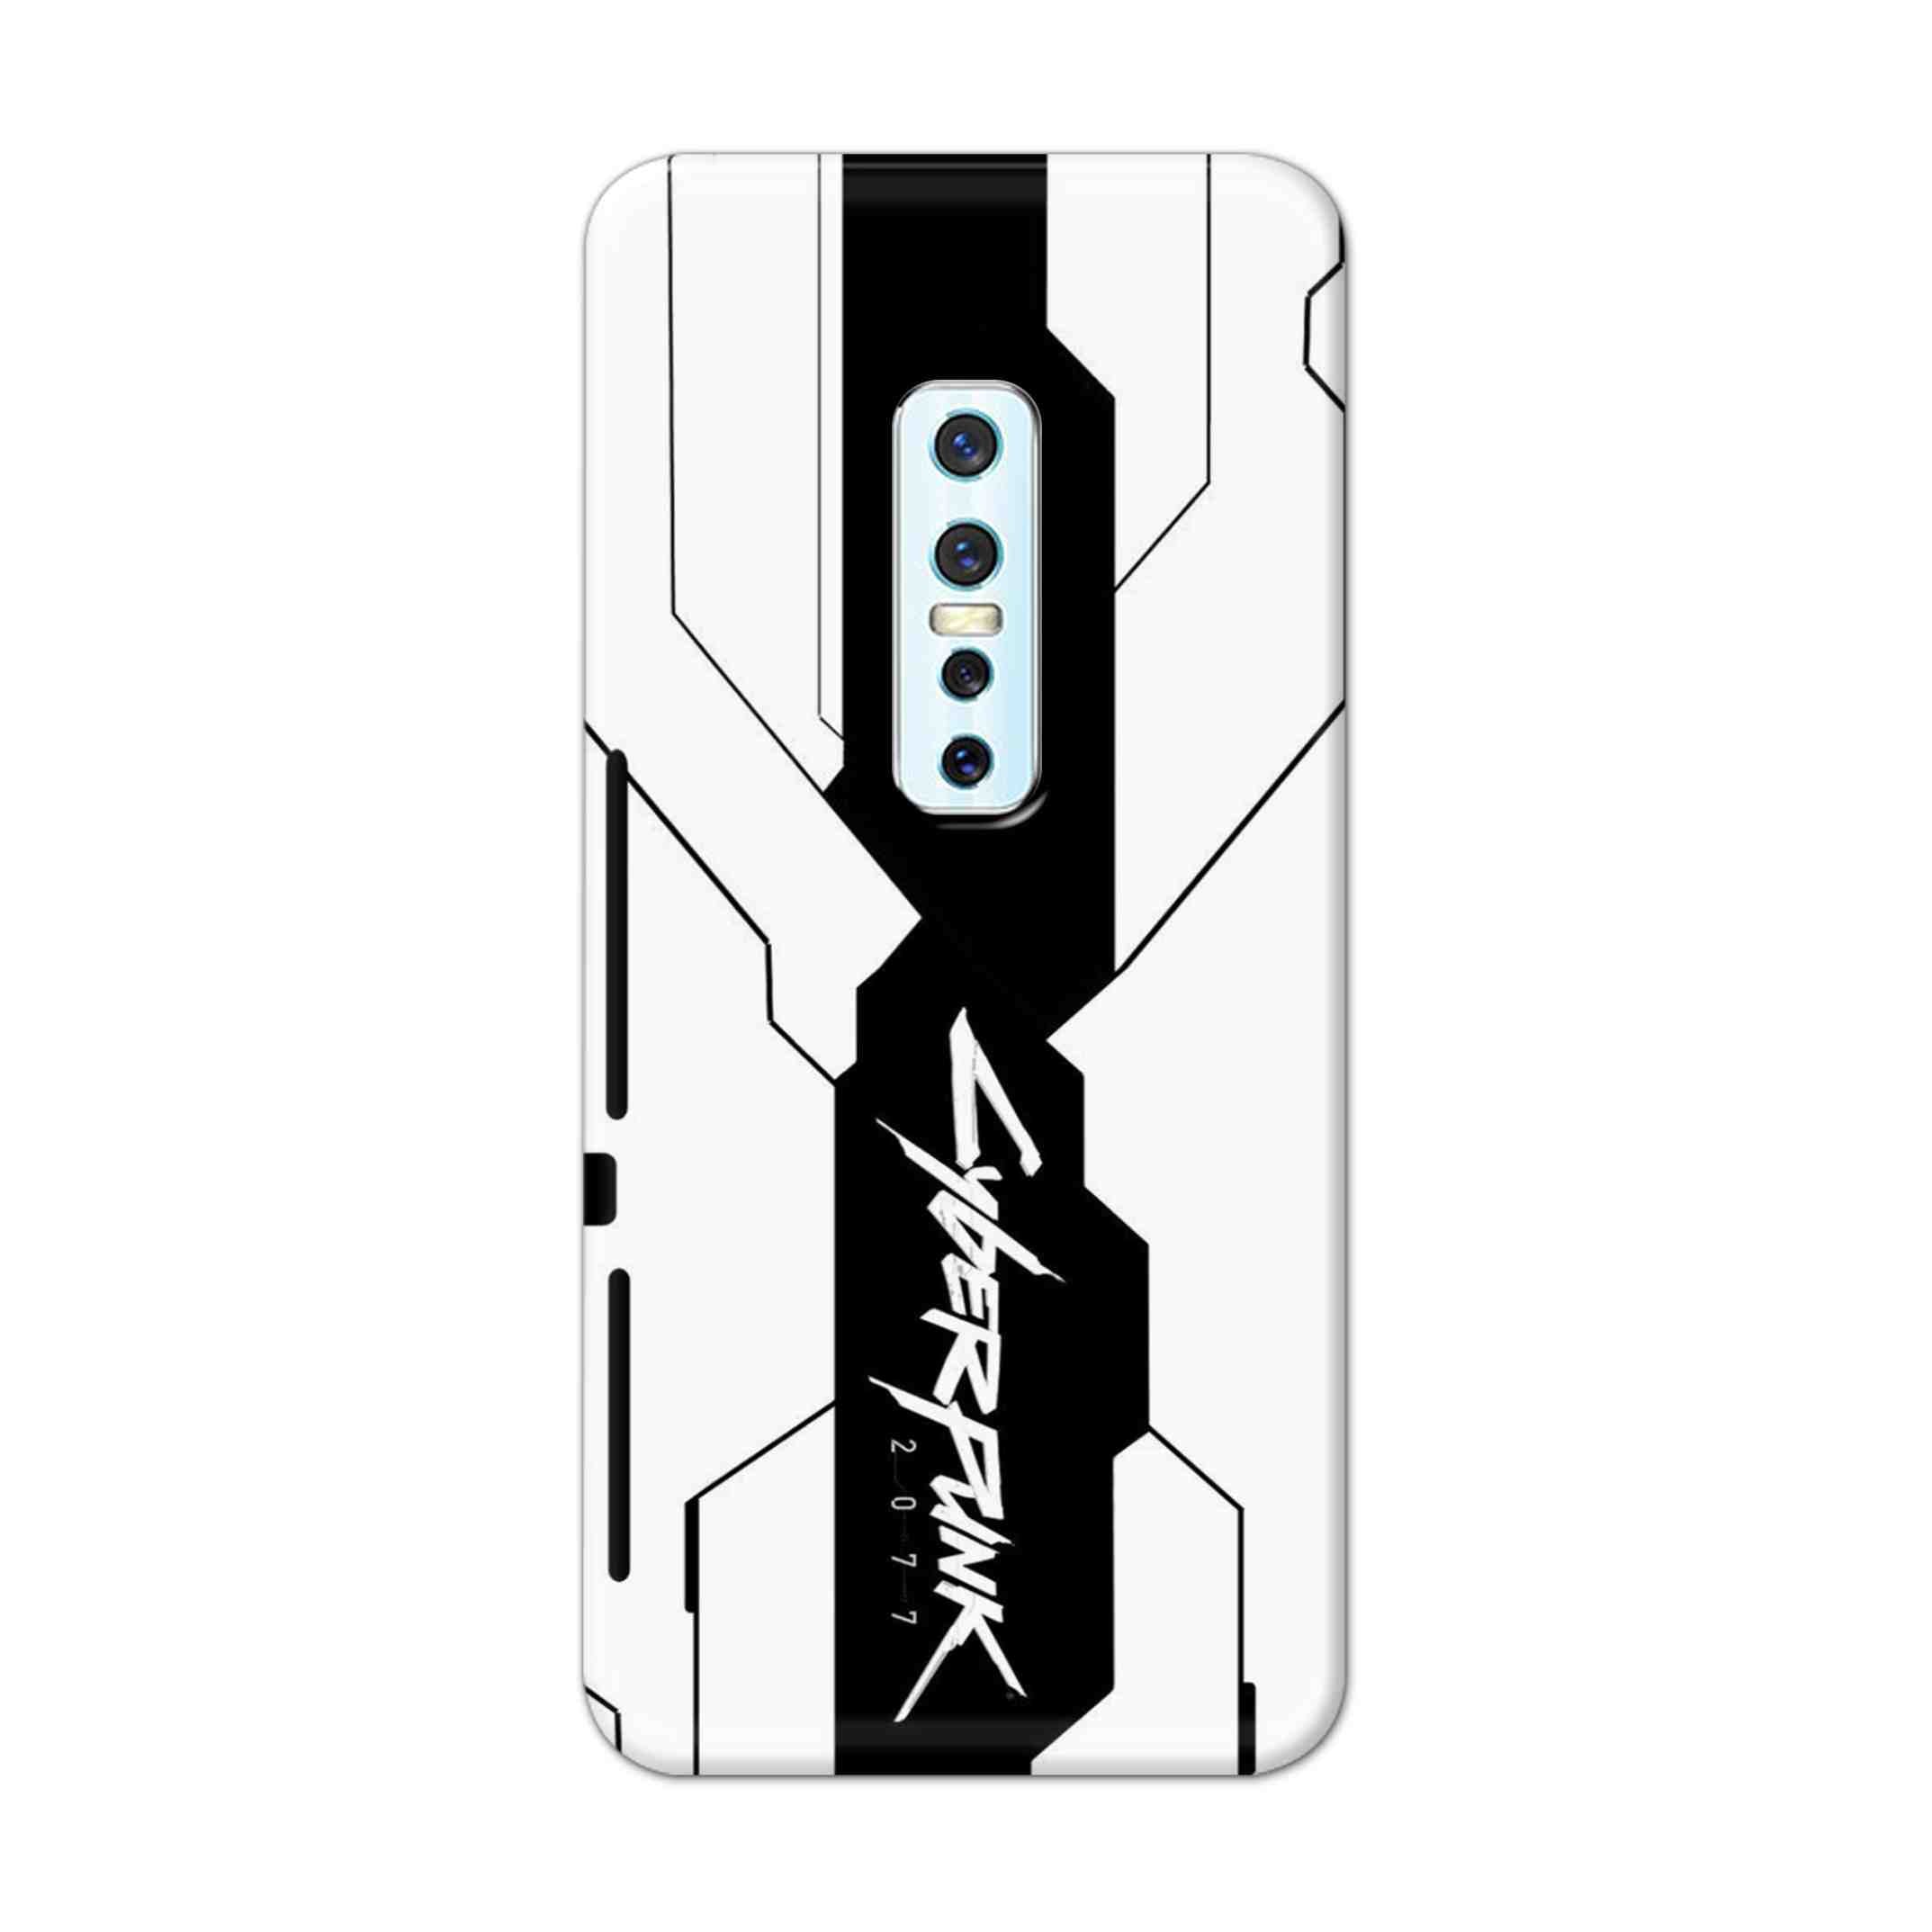 Buy Cyberpunk 2077 Hard Back Mobile Phone Case Cover For Vivo V17 Pro Online